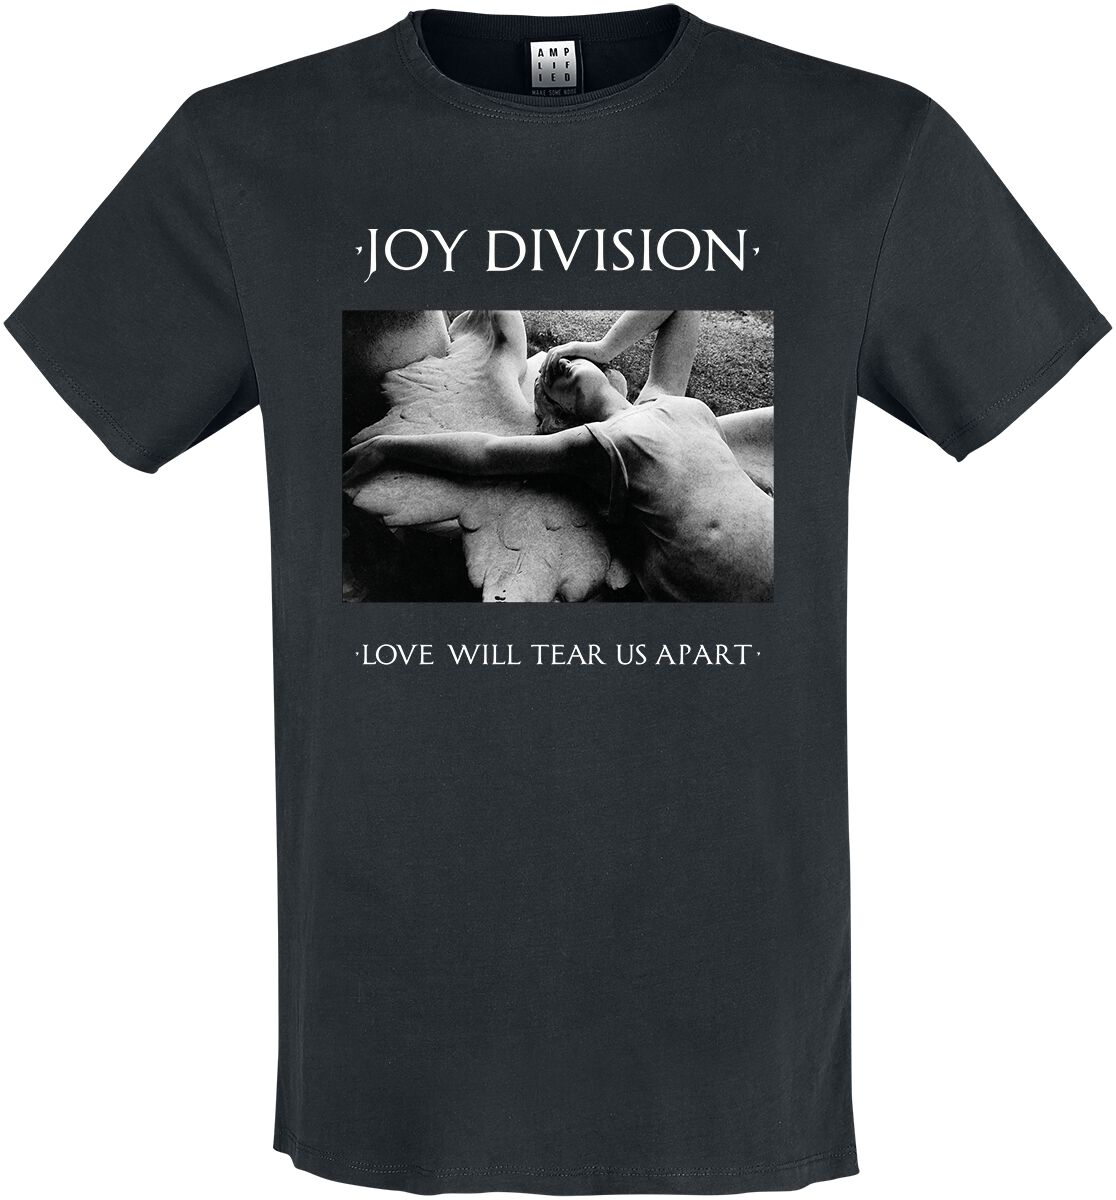 Joy Division T-Shirt - Amplified Collection - Love Will Tear Us Apart - S bis XL - für Männer - Größe S - schwarz  - Lizenziertes Merchandise!